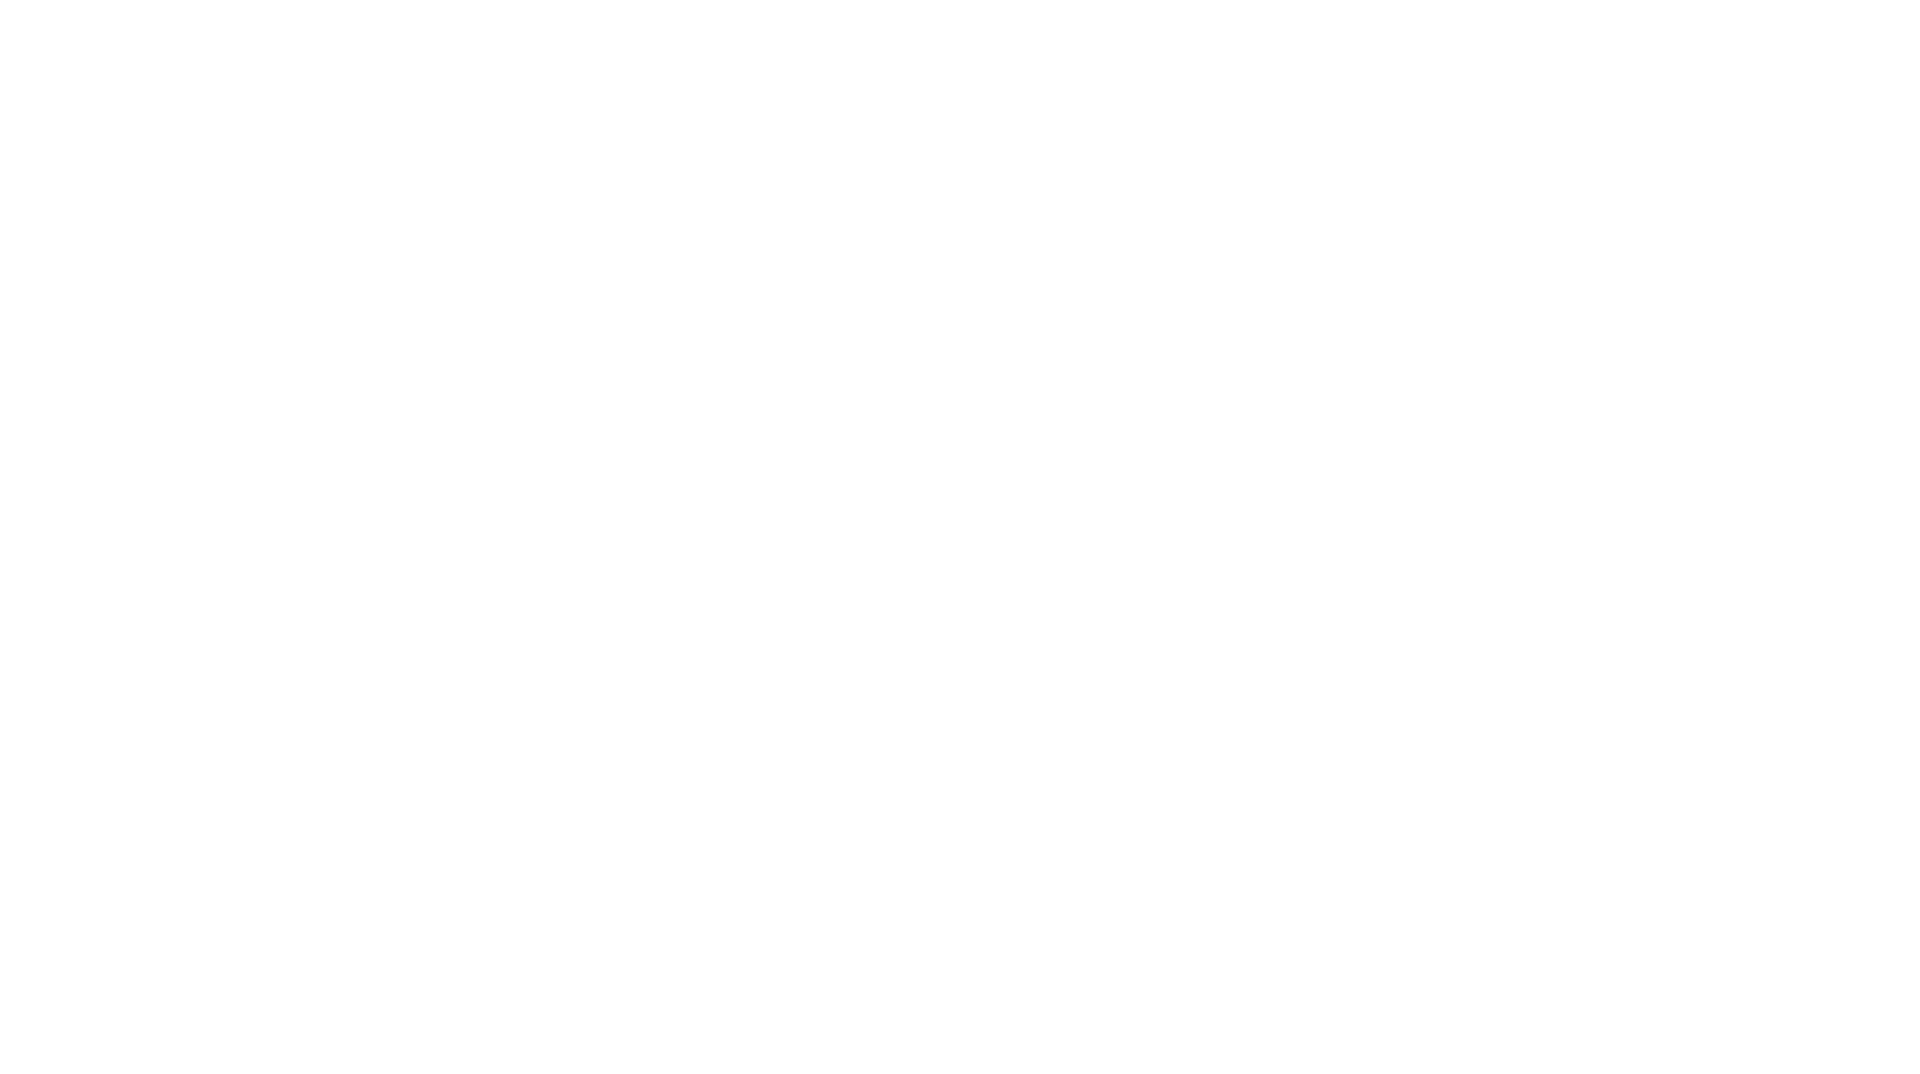 Yukon University logo